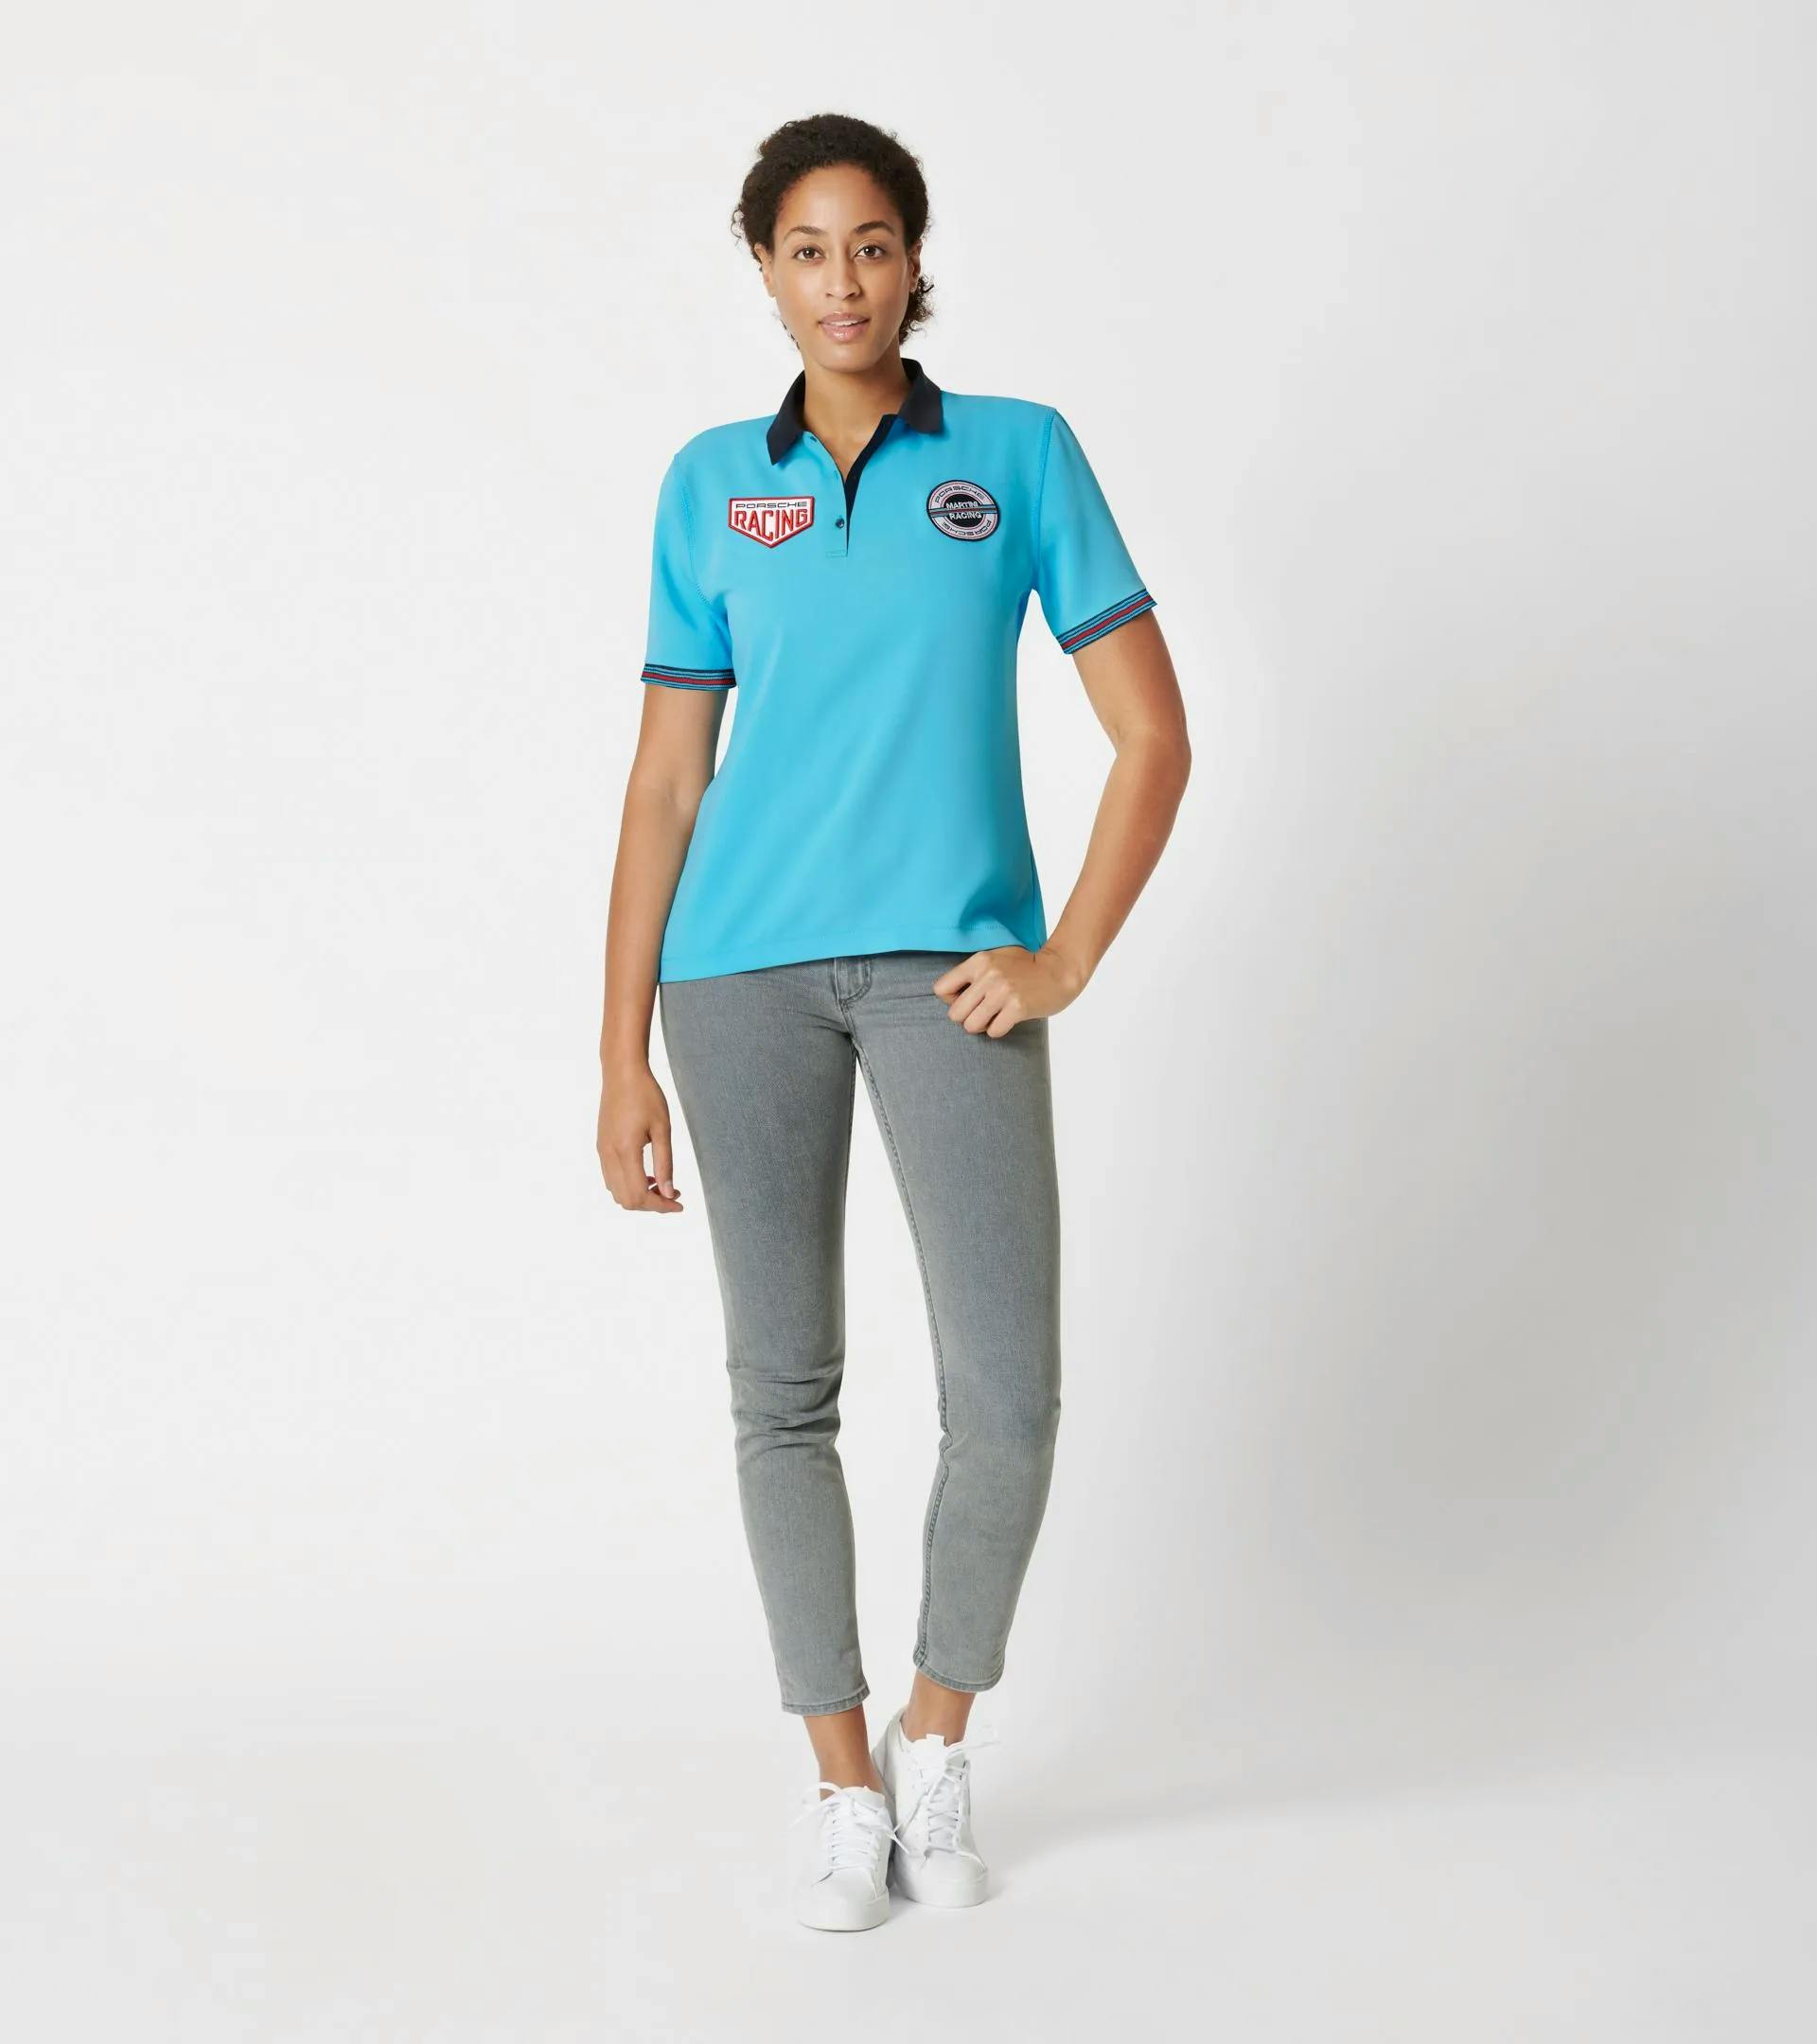 Women's polo shirt – MARTINI RACING® 3